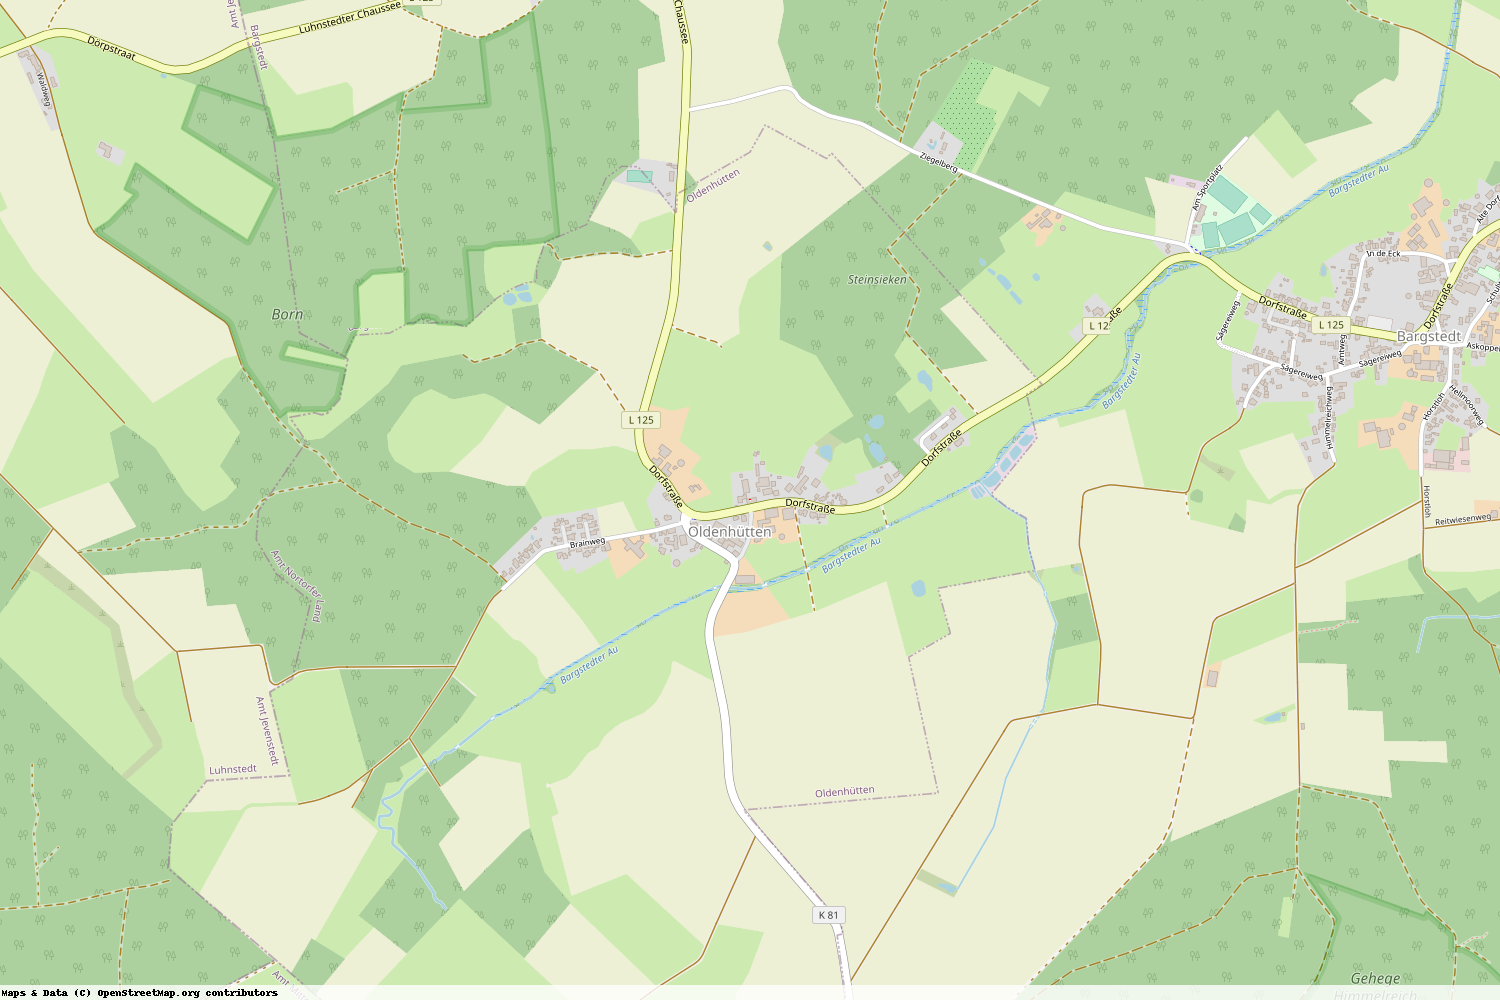 Ist gerade Stromausfall in Schleswig-Holstein - Rendsburg-Eckernförde - Oldenhütten?